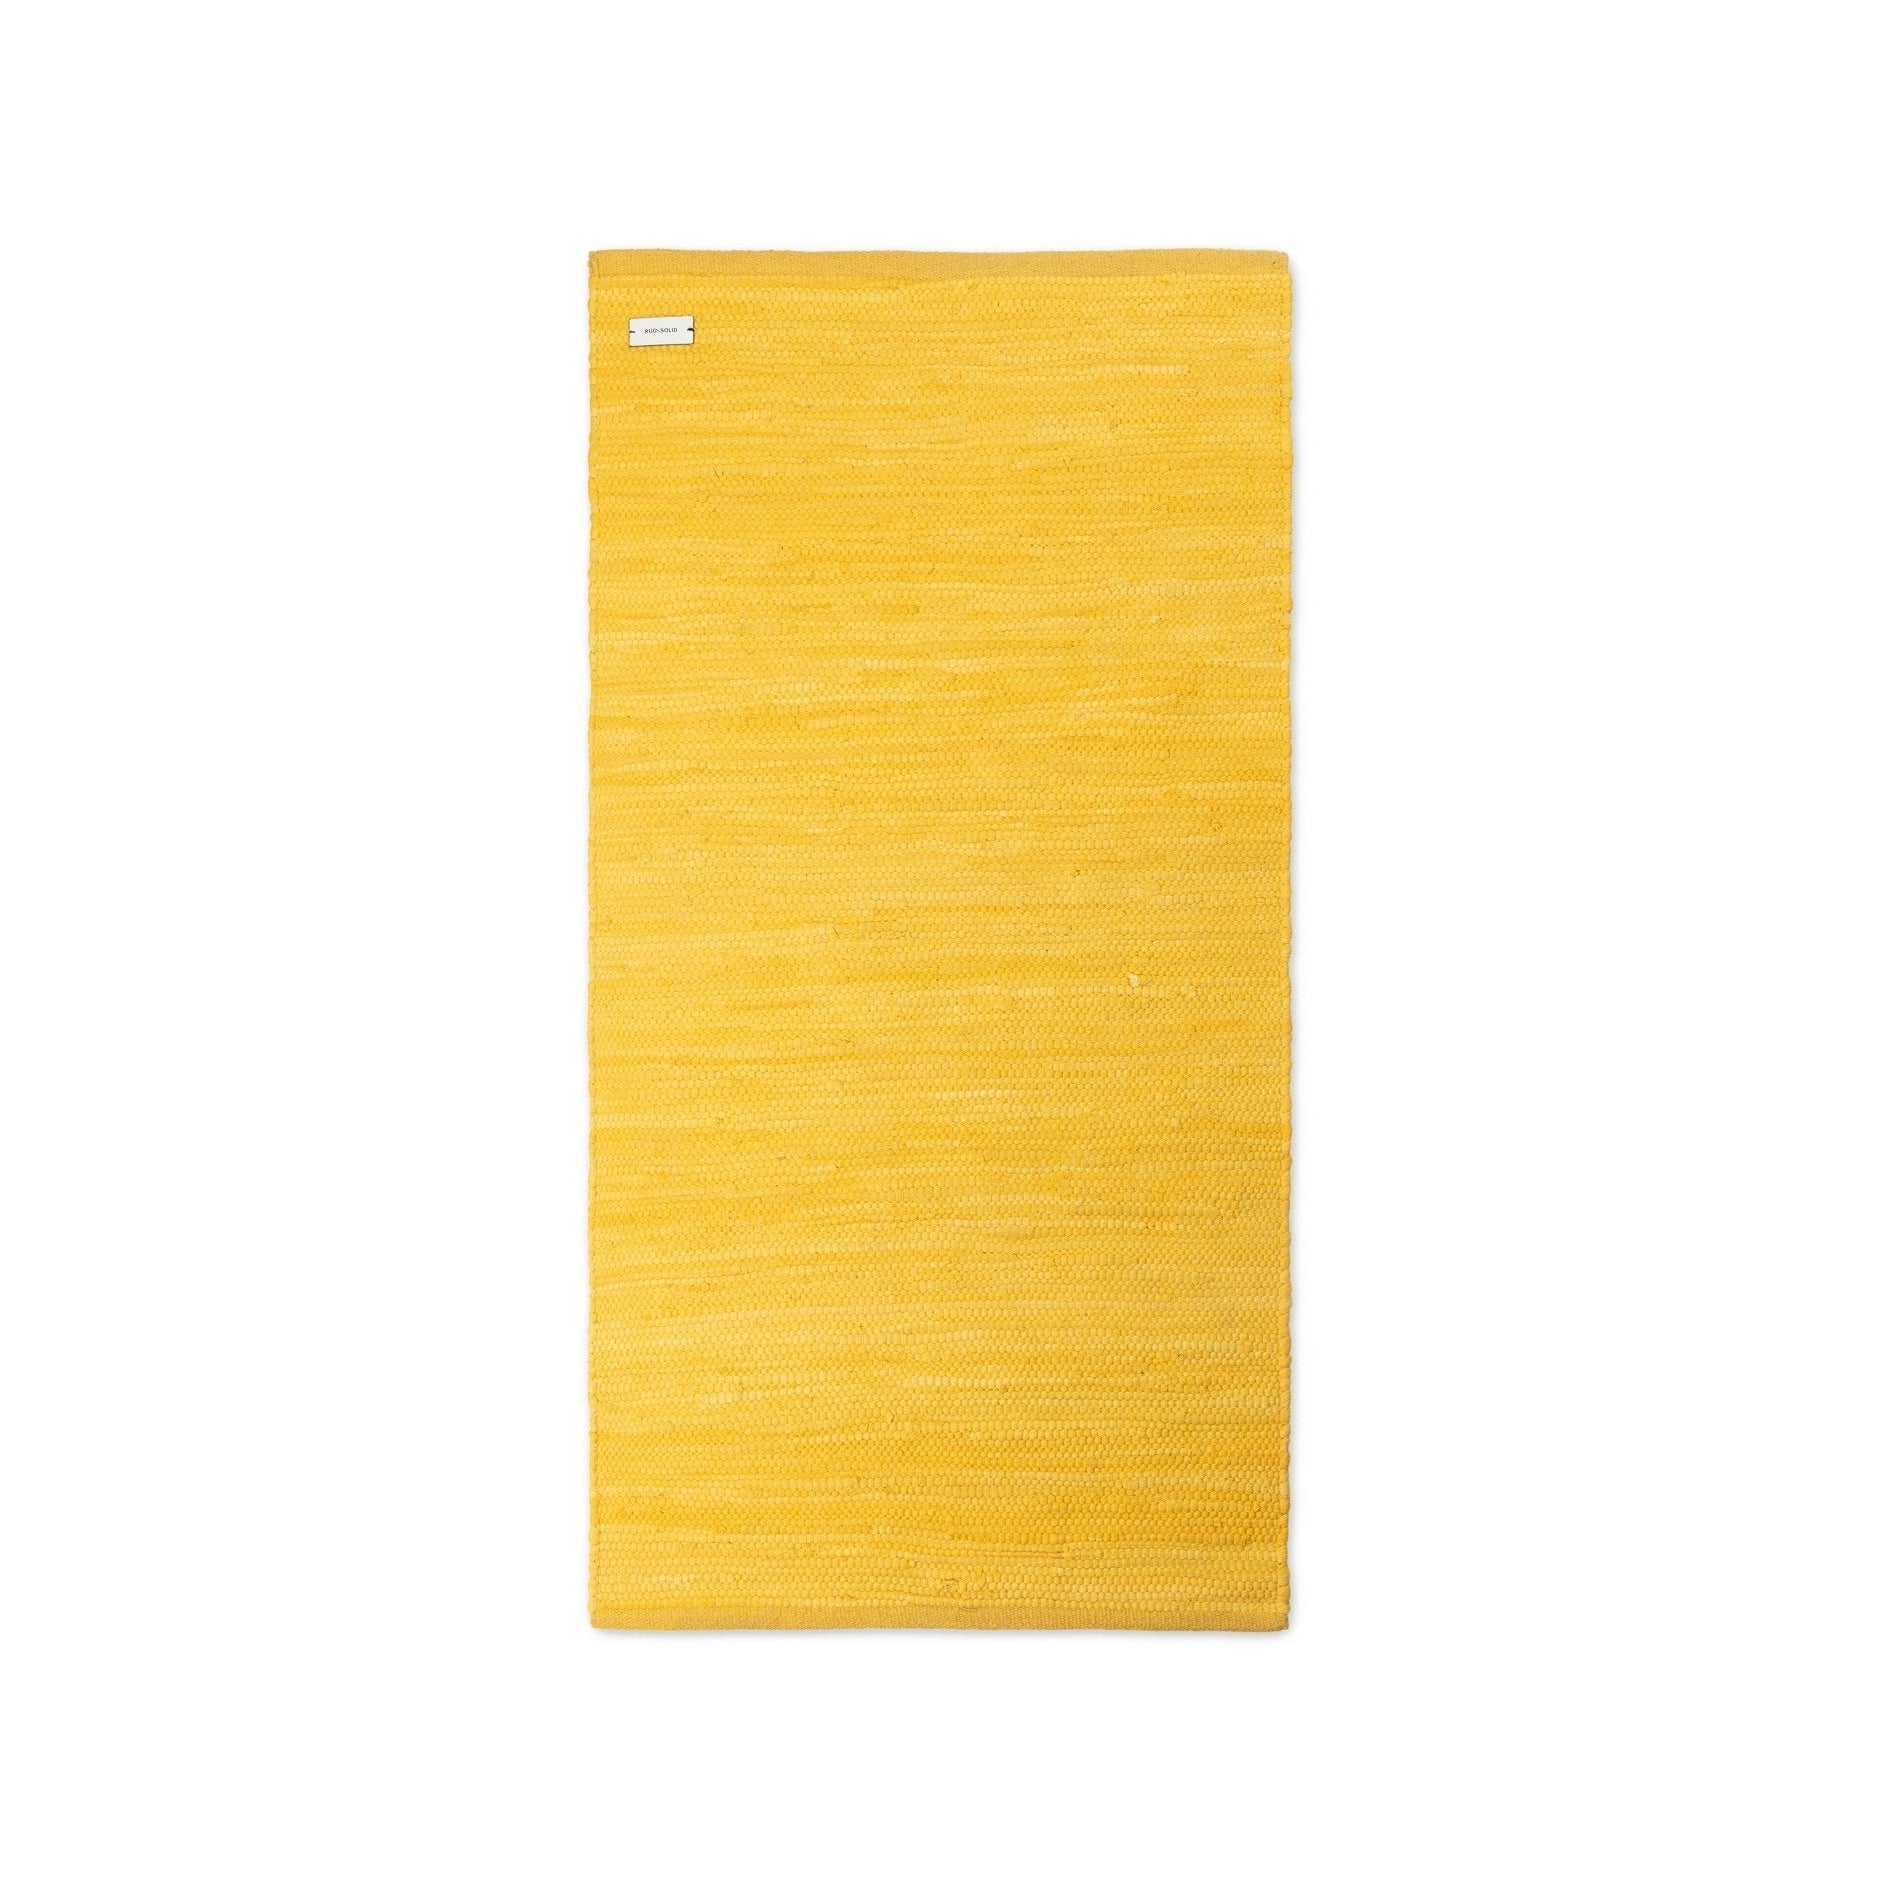 Rug Solid Puuvillamaton sadetakki keltainen, 60 x 90 cm